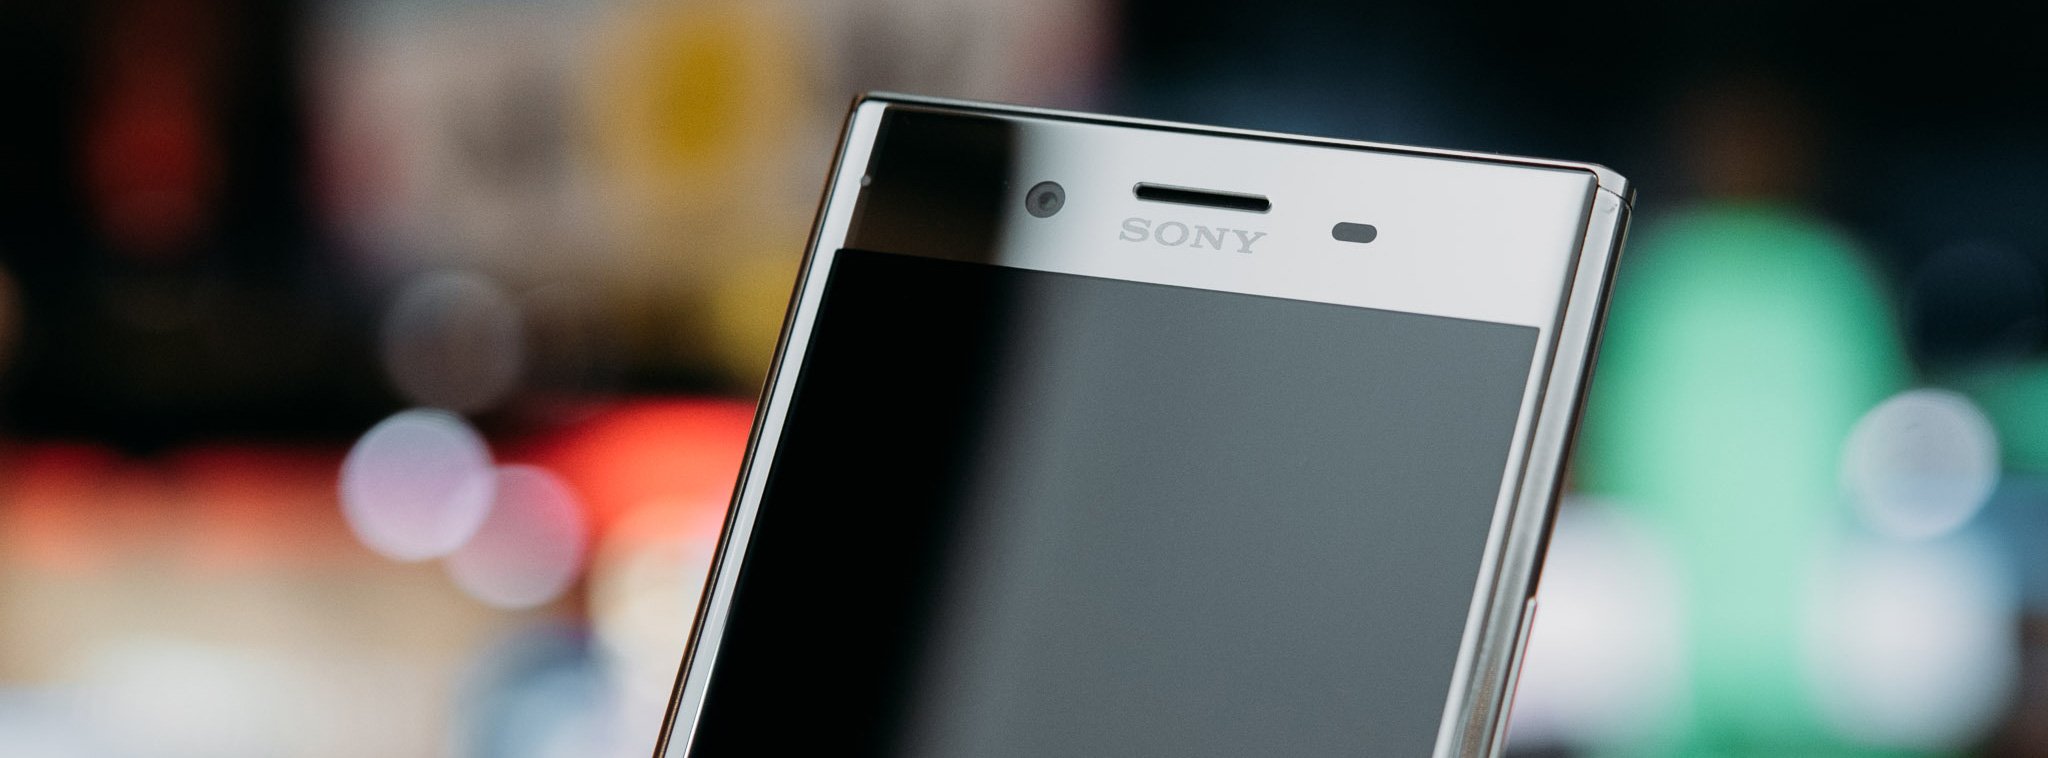 Giám đốc điều hành Sony Ấn Độ: sẽ có dòng smartphone mới với thiết kế thay đổi hoàn toàn